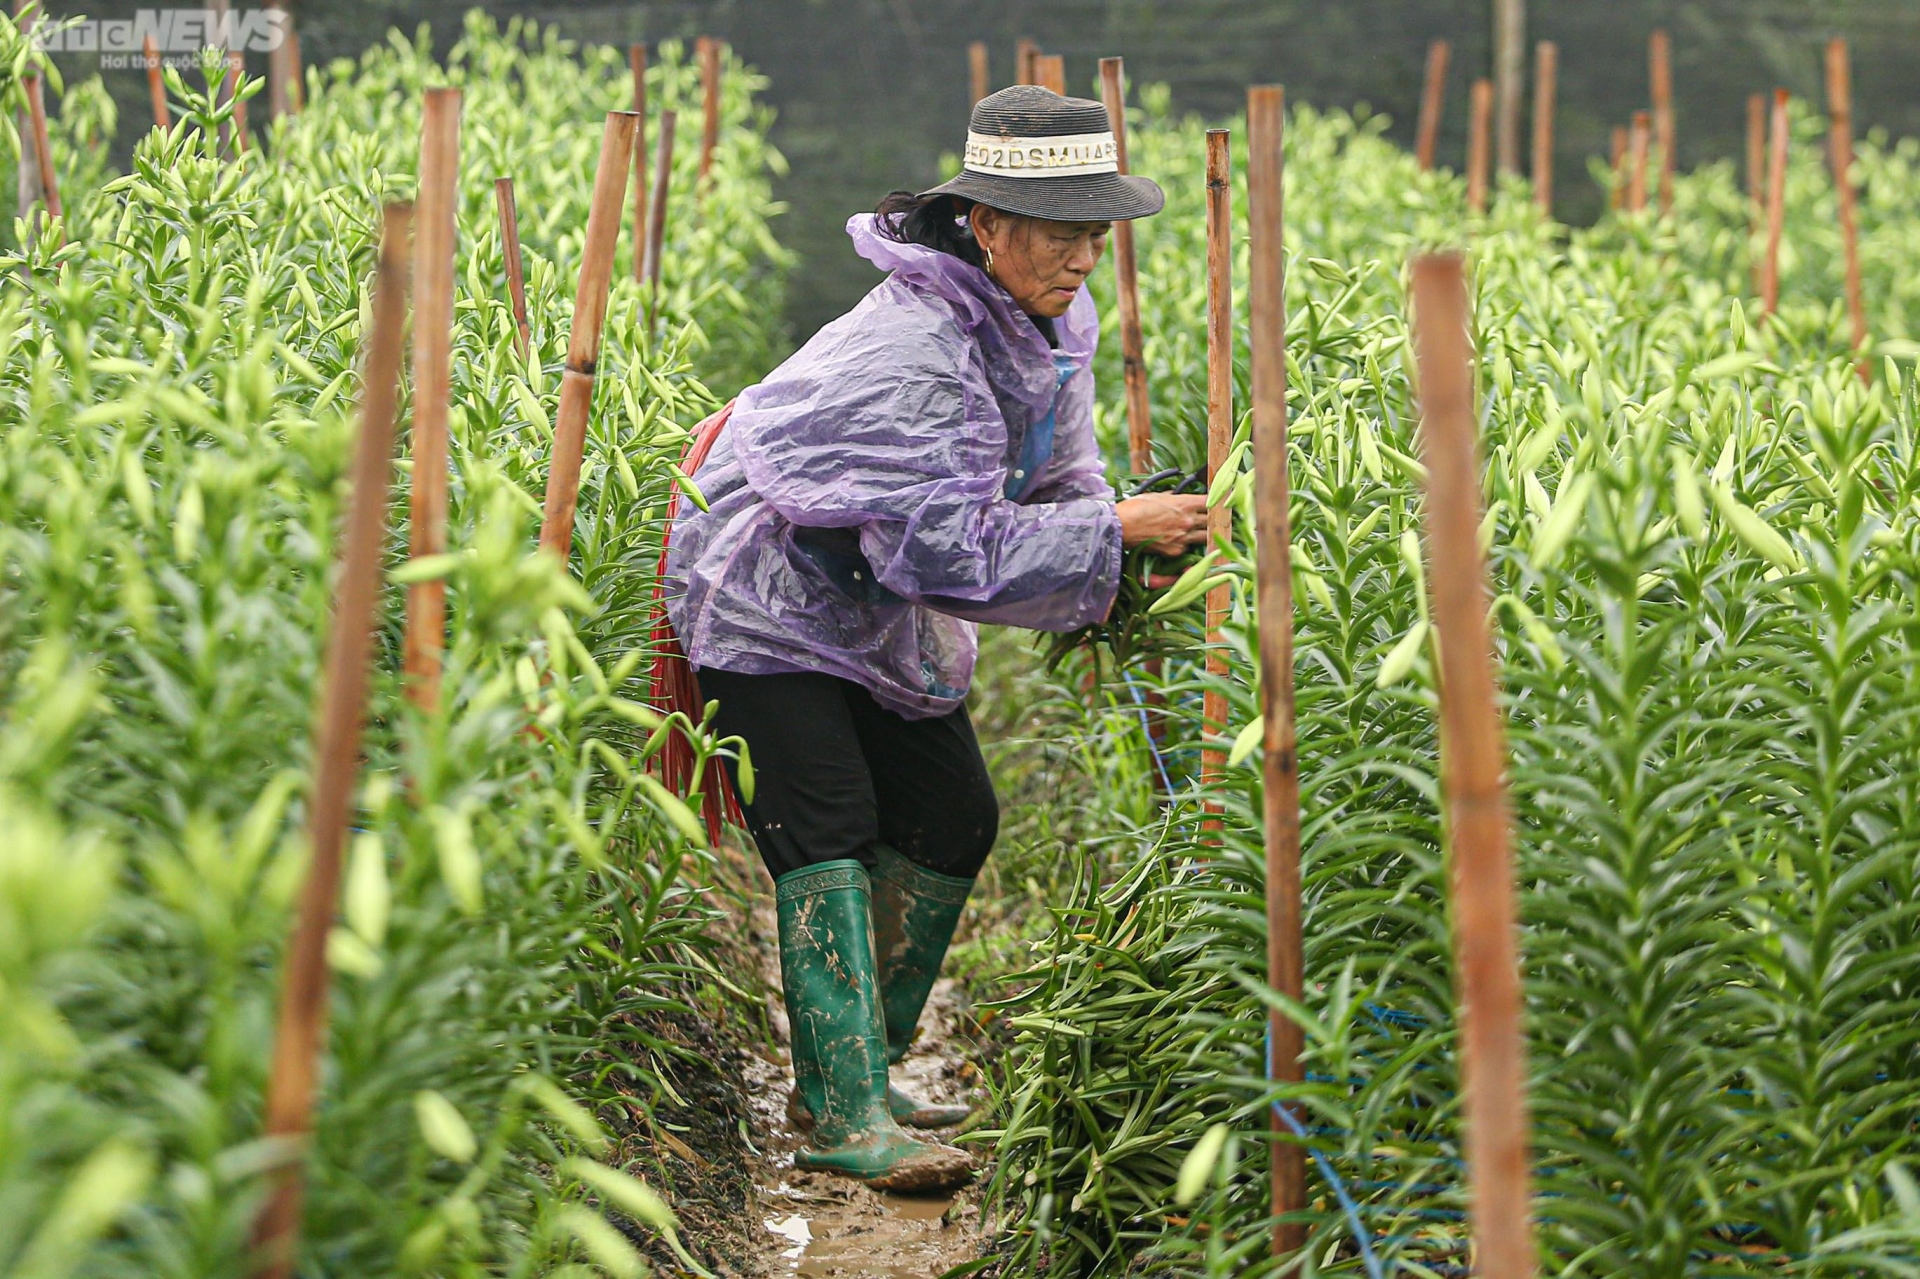 Hoa loa kèn vào vụ, nông dân ngoại thành Hà Nội thu chục triệu đồng mỗi ngày - 7